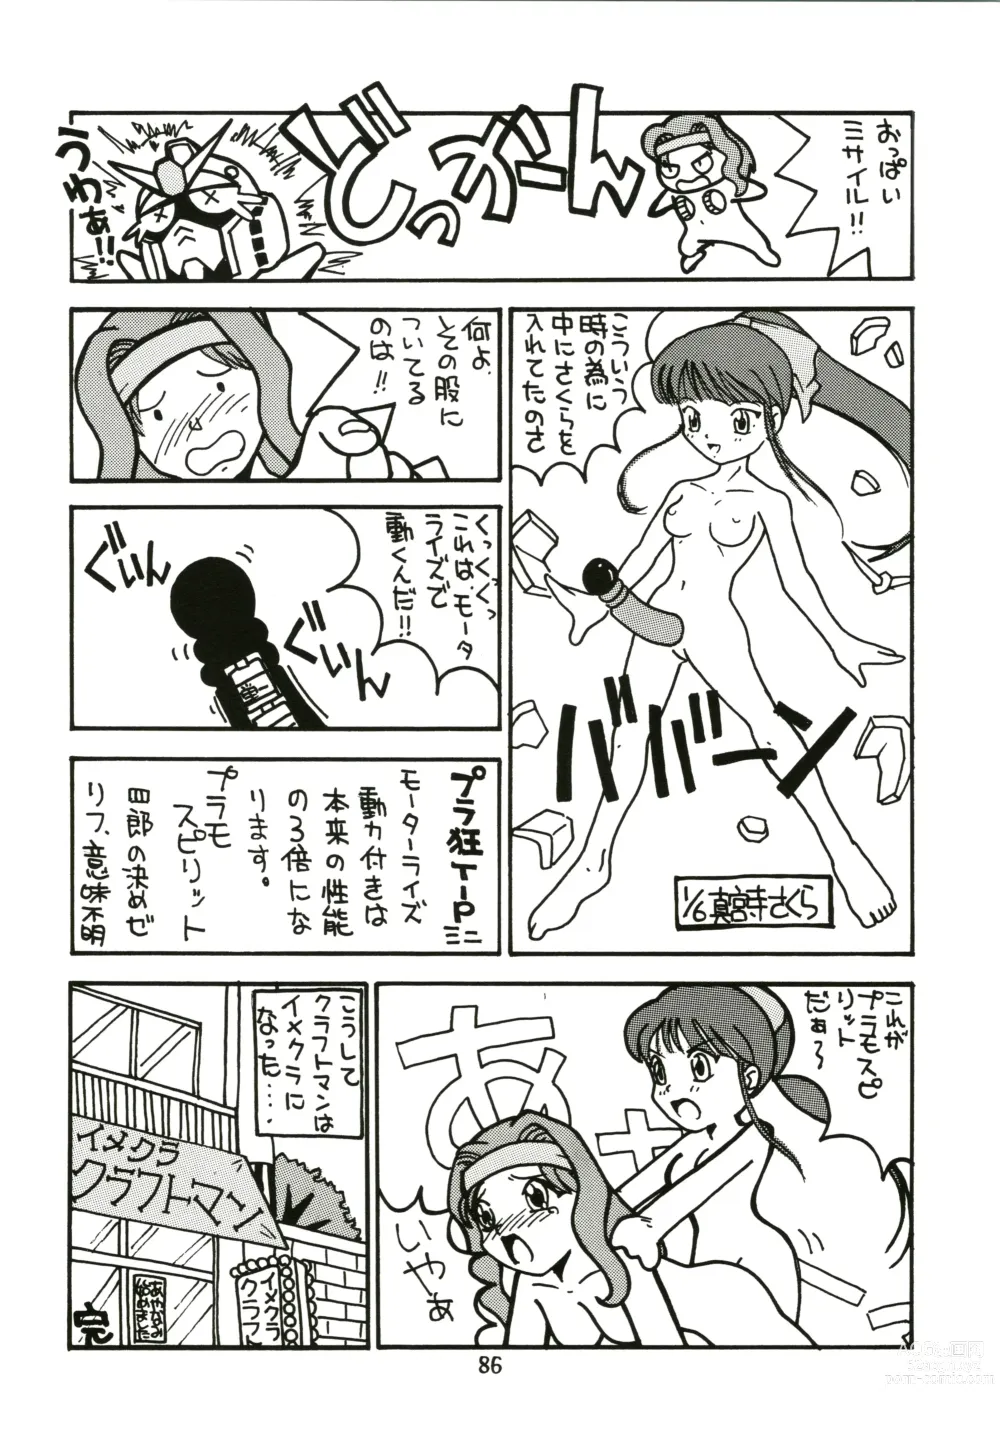 Page 86 of doujinshi Sakura Ame